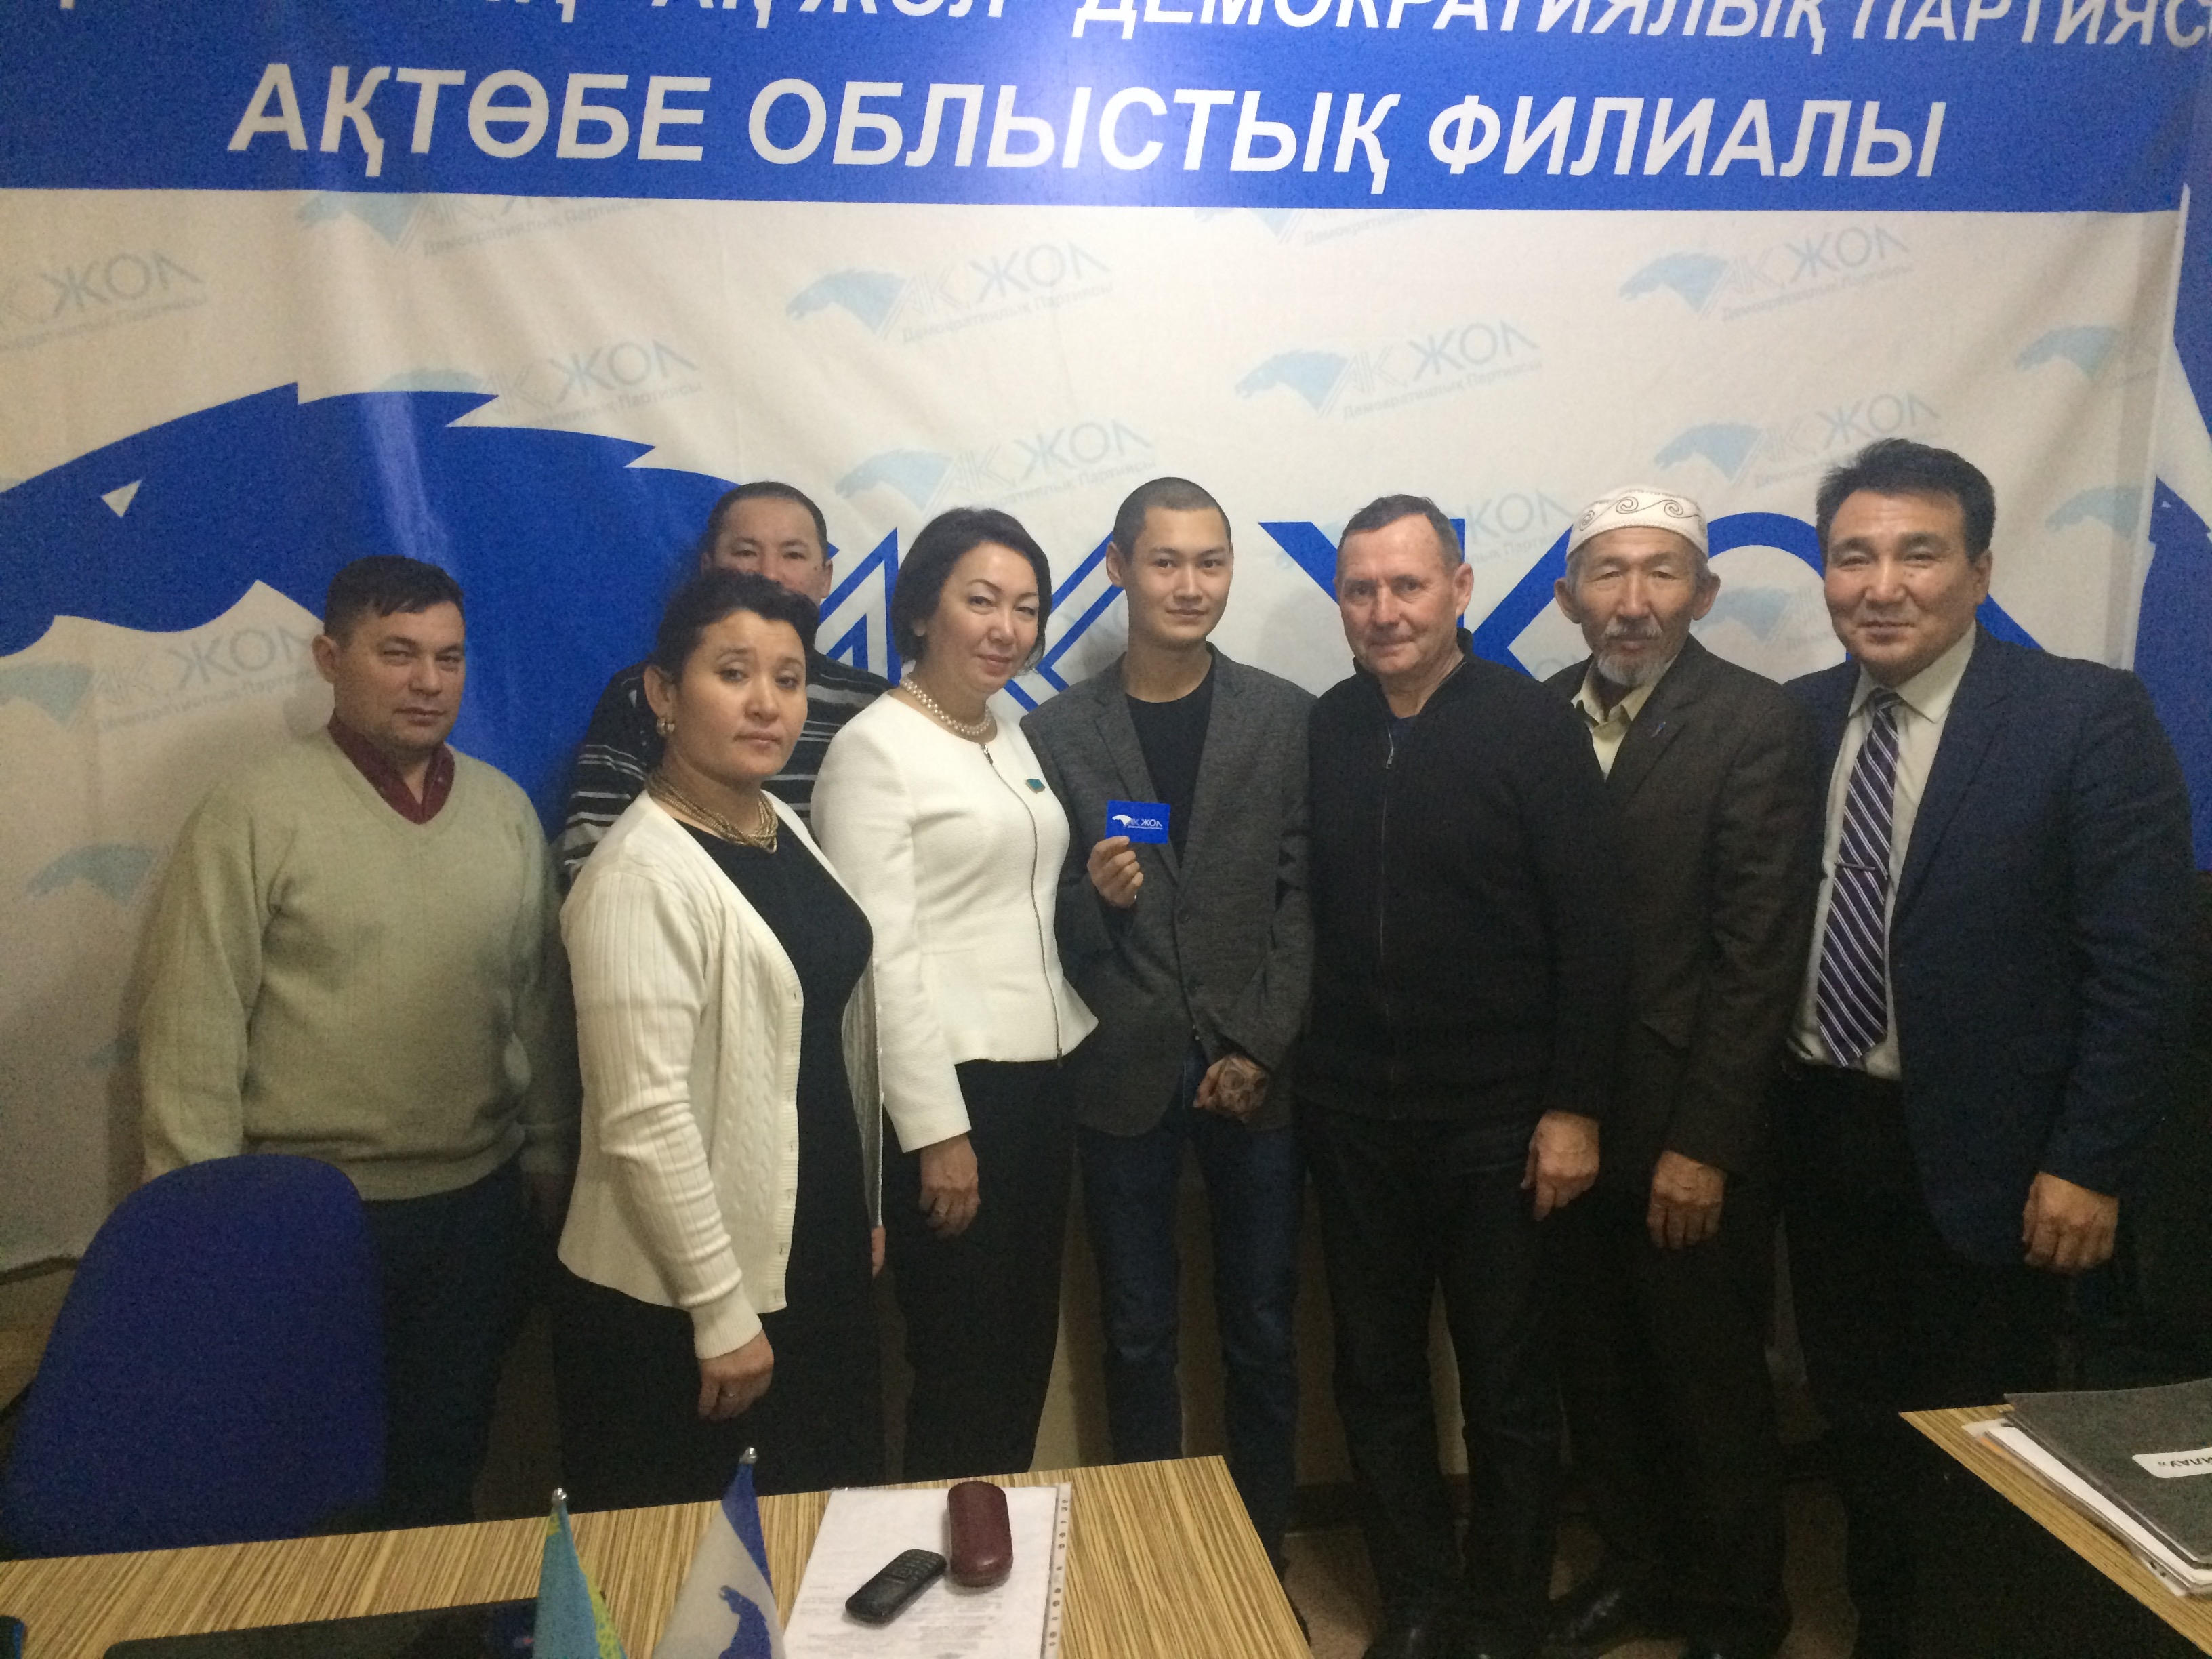 11 января 2017 года, Актюбинский областной филиал ДПК "Ак жол" Депутат Еспаева провела прием граждан в офисе филиала ДПК «Ак жол».